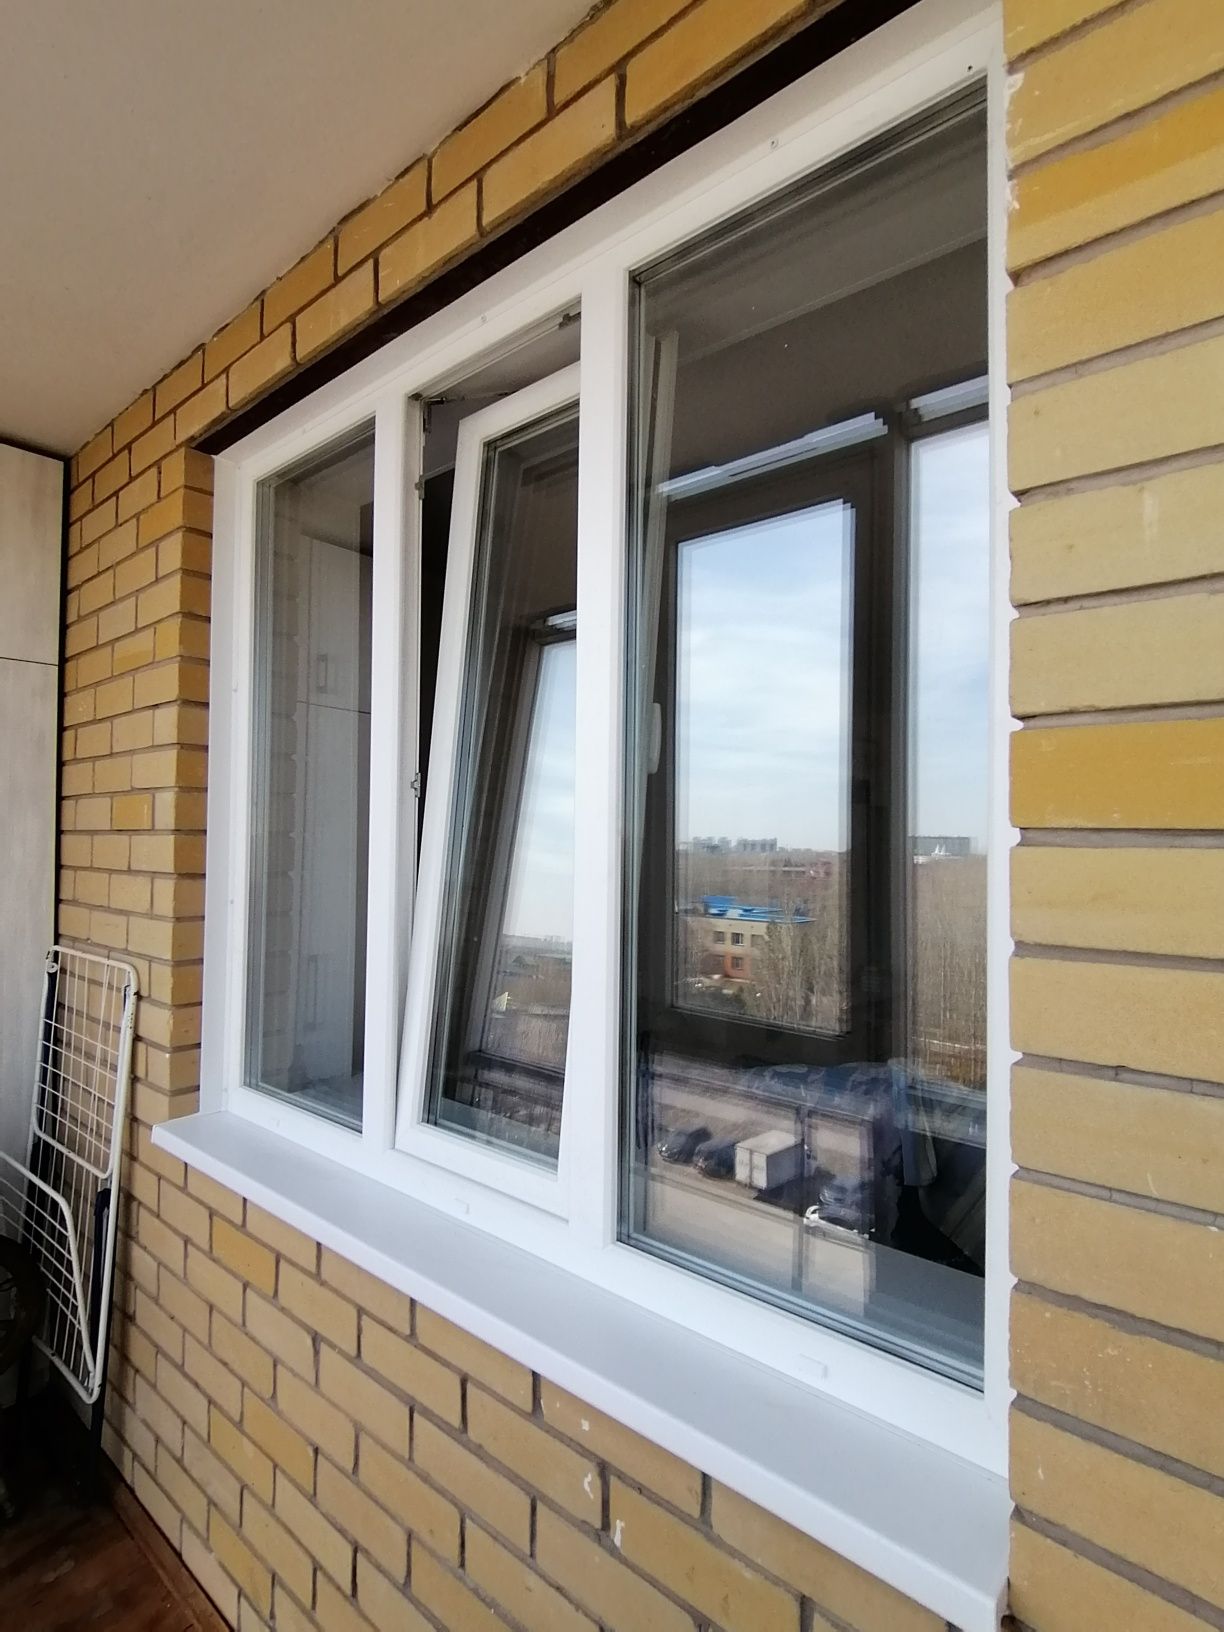 Окна /двери /балконы